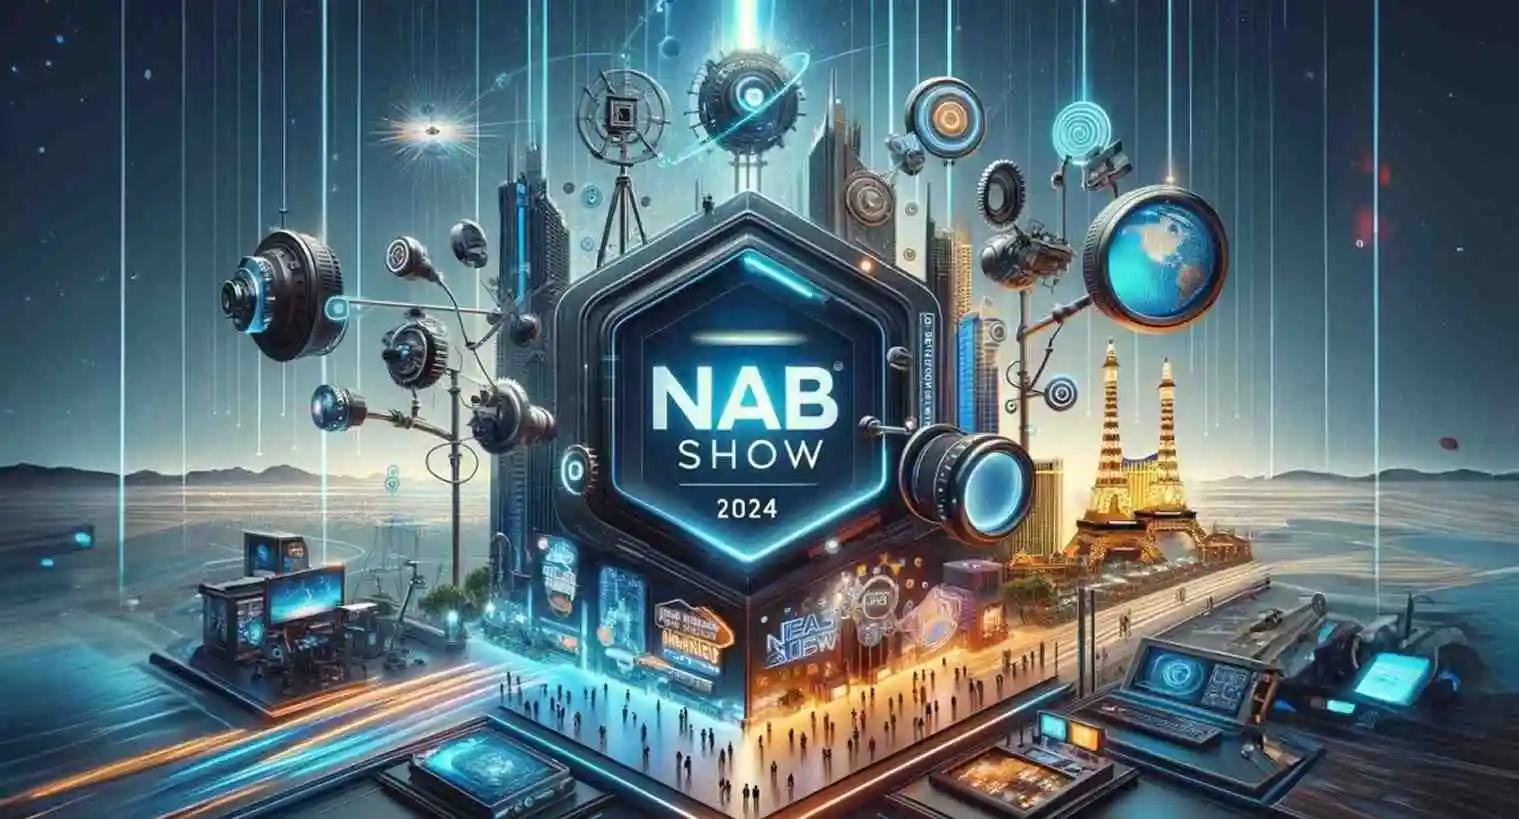 Tendenze e novità dal NAB 2024 di Las Vegas con Alfa Networks, Sony e Small Pixels